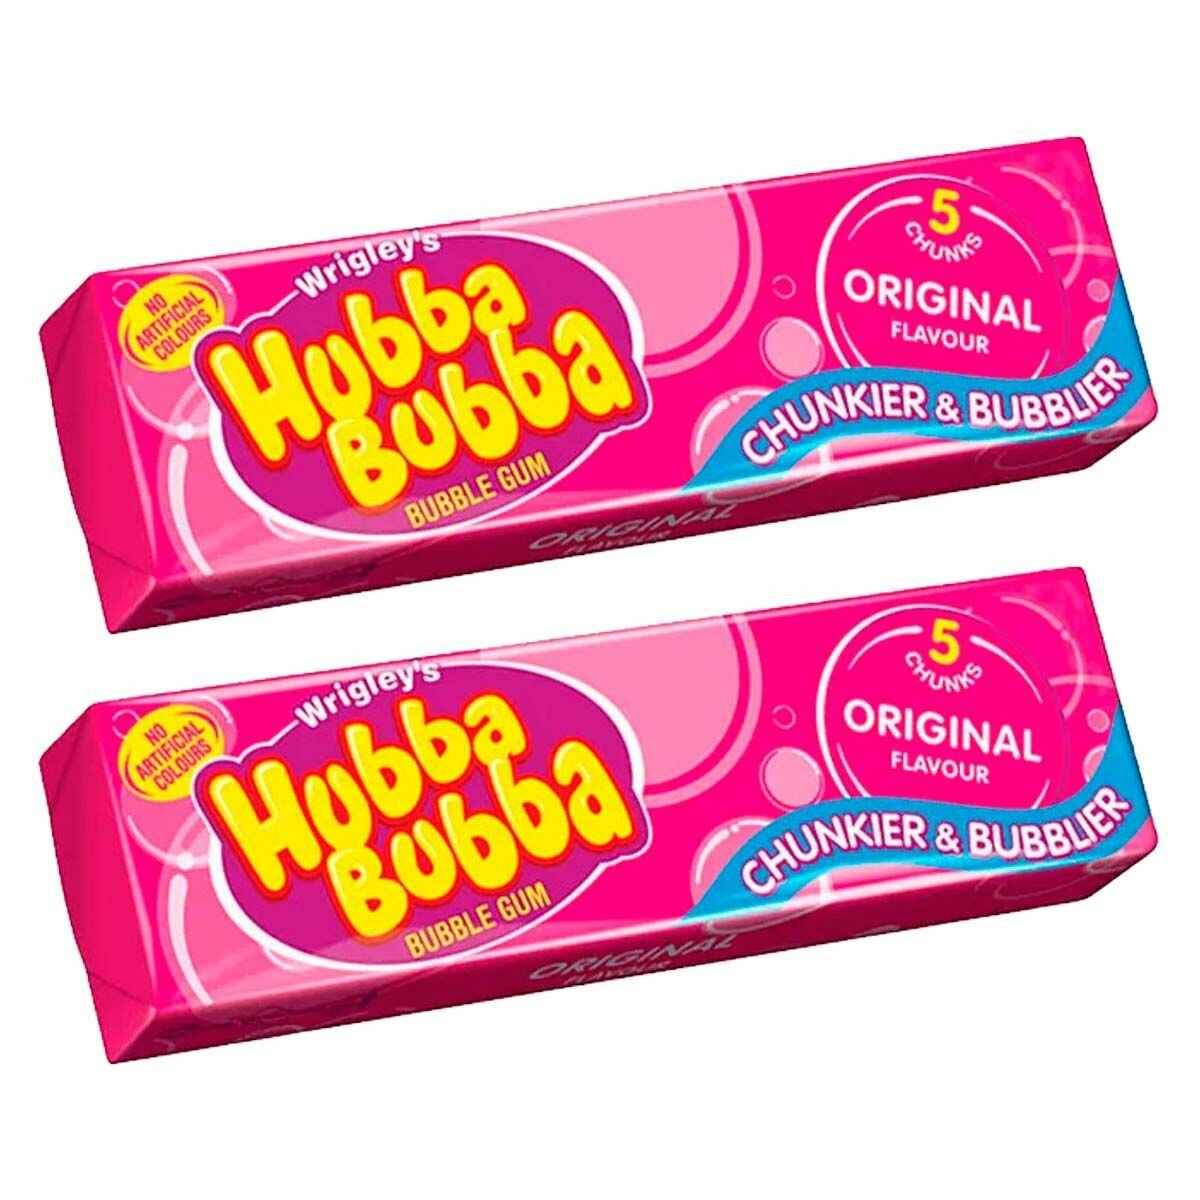 Жевательная резинка Wrigley's Hubba Bubba Original Flavour (Германия) 35 г (2 шт)